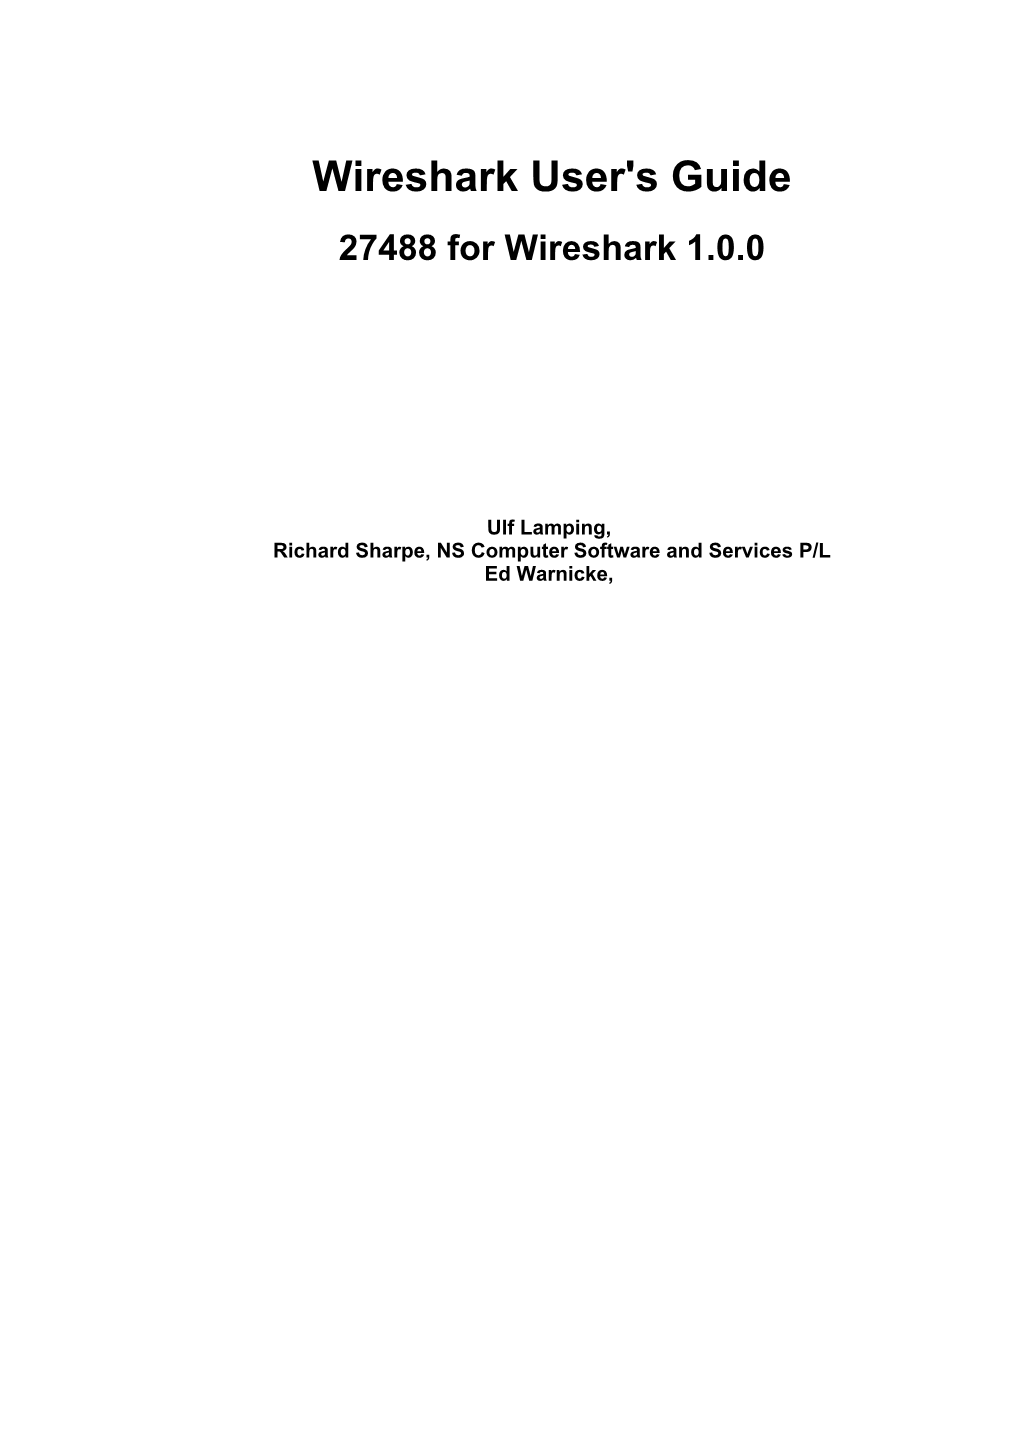 Wireshark User's Guide 27488 for Wireshark 1.0.0